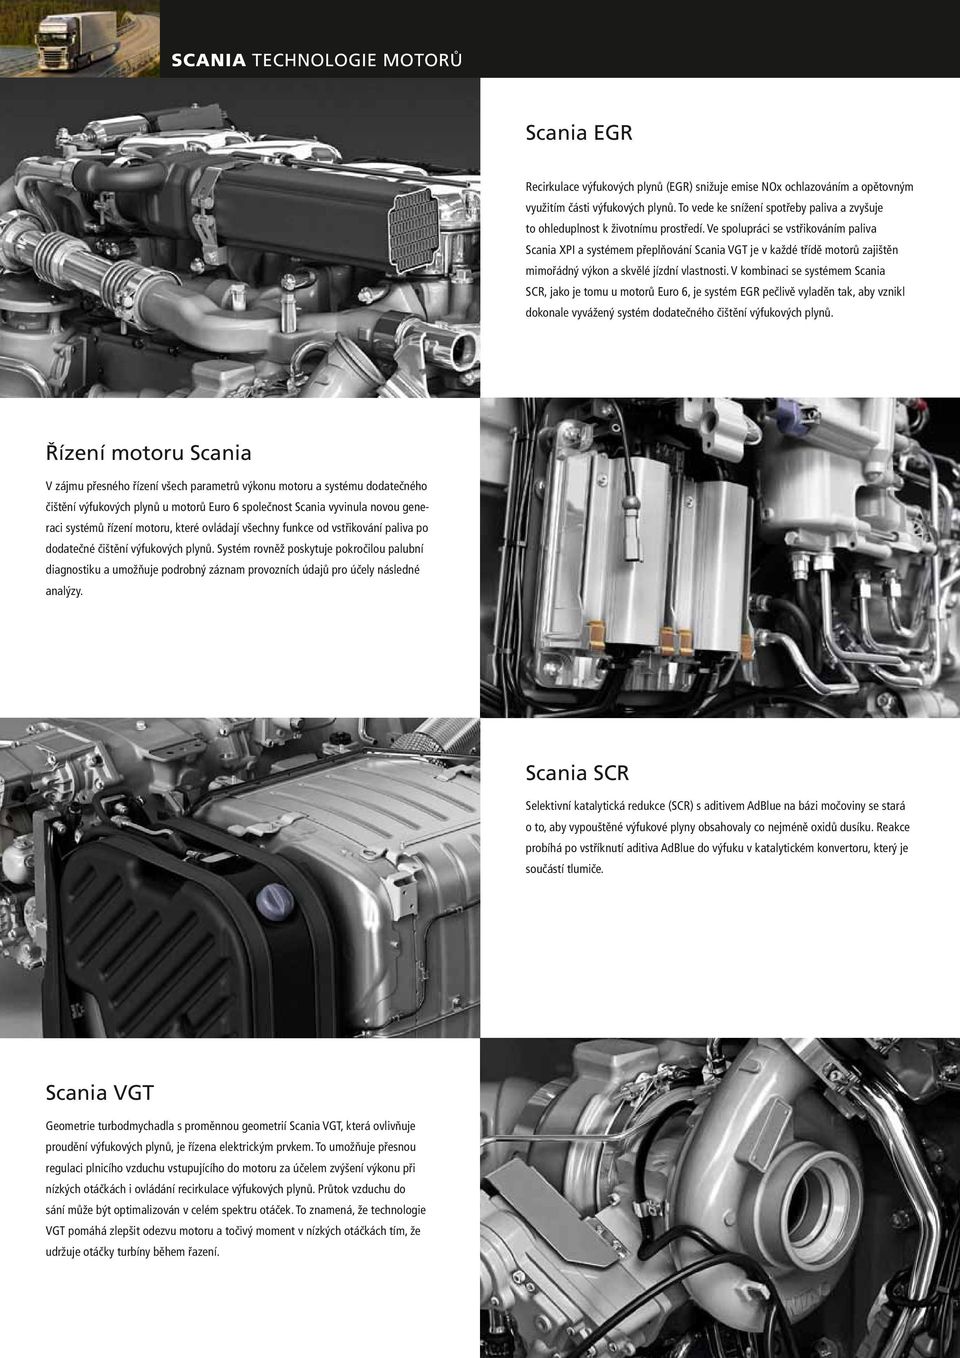 Ve spolupráci se vstřikováním paliva Scania XPI a systémem přeplňování Scania VGT je v každé třídě motorů zajištěn mimořádný výkon a skvělé jízdní vlastnosti.